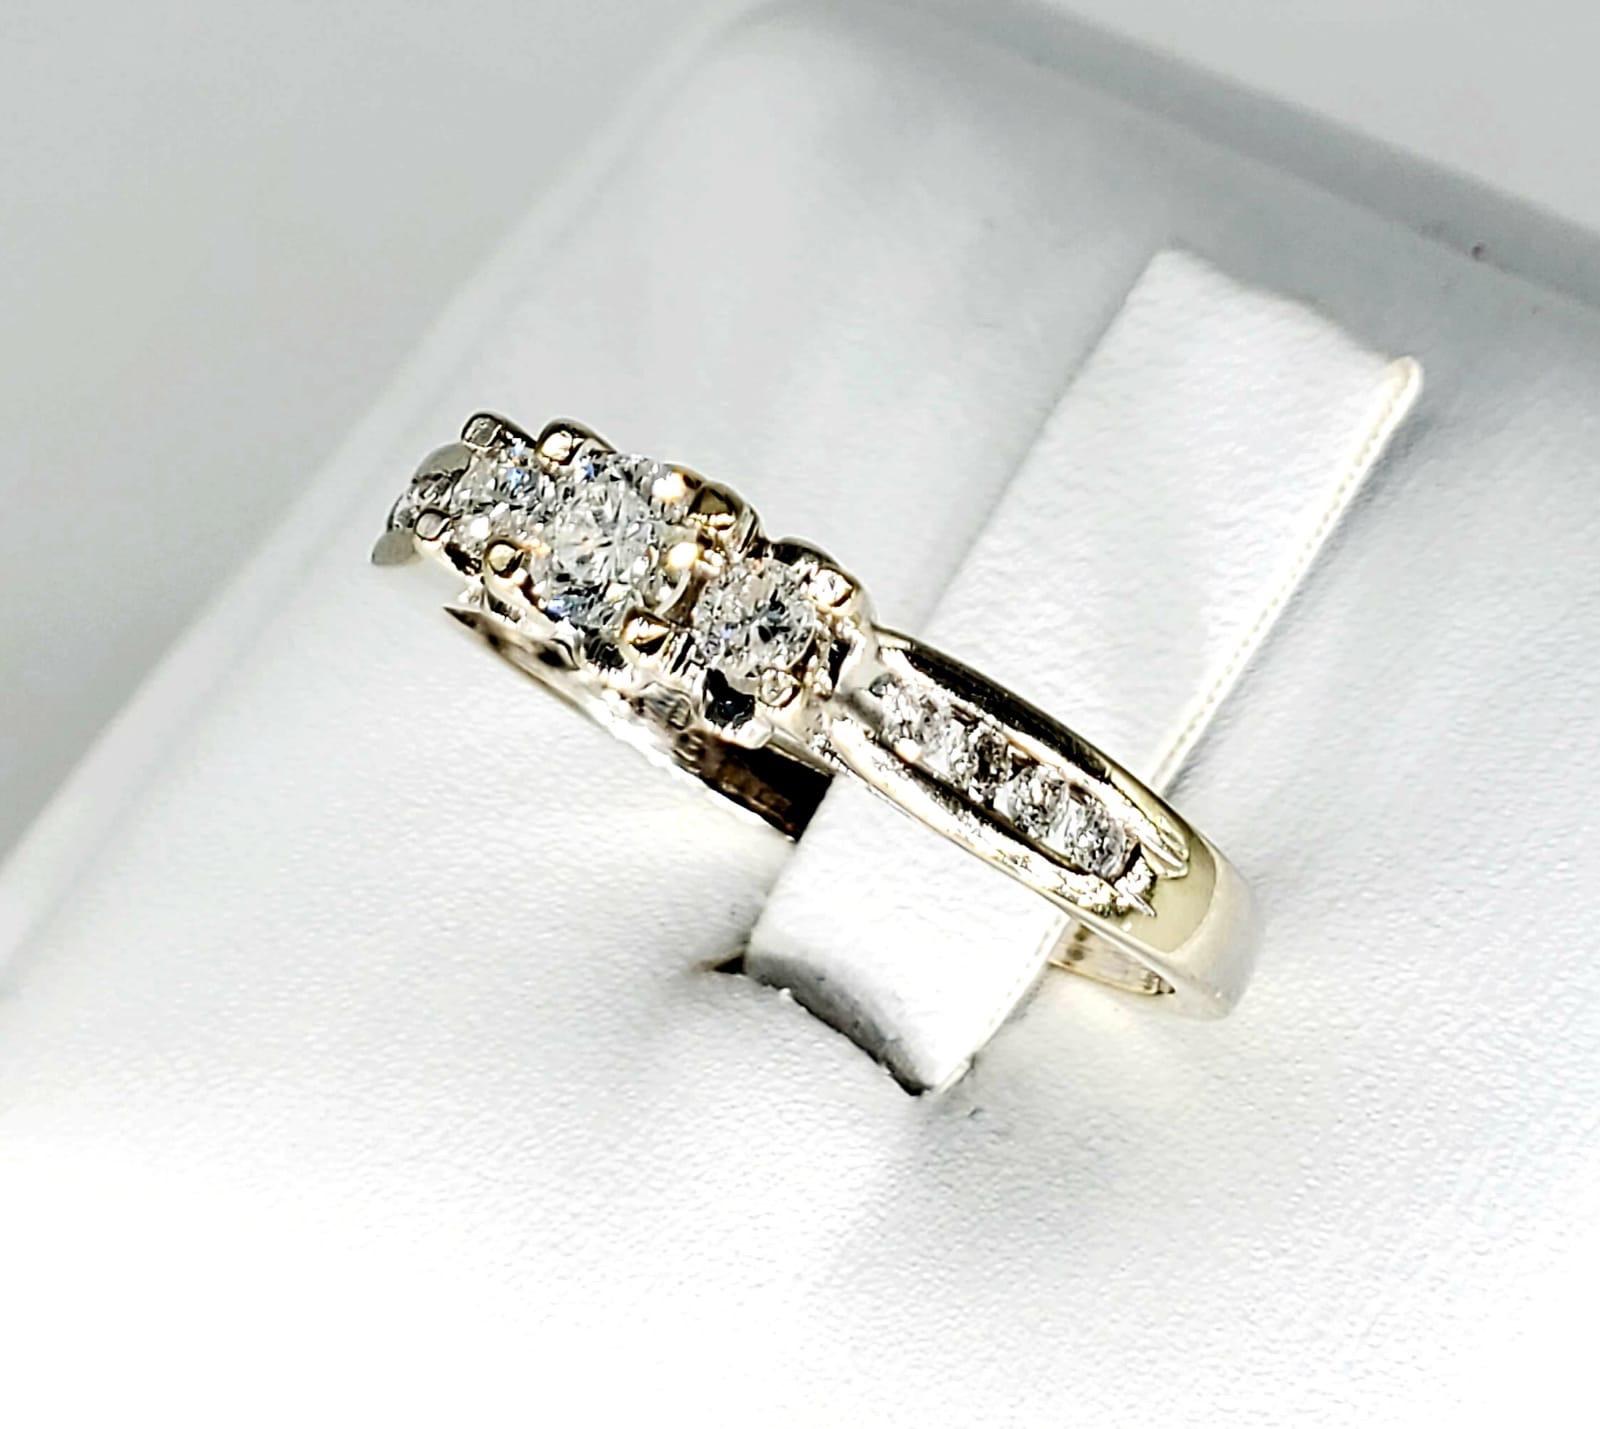 Vintage 1.00 Carat Diamonds Engagement Ring 14k. Des diamants partout comme une couronne sur cette magnifique bague de fiançailles en diamants. La bague est une taille 8.75 et pèse 2.9 grammes.